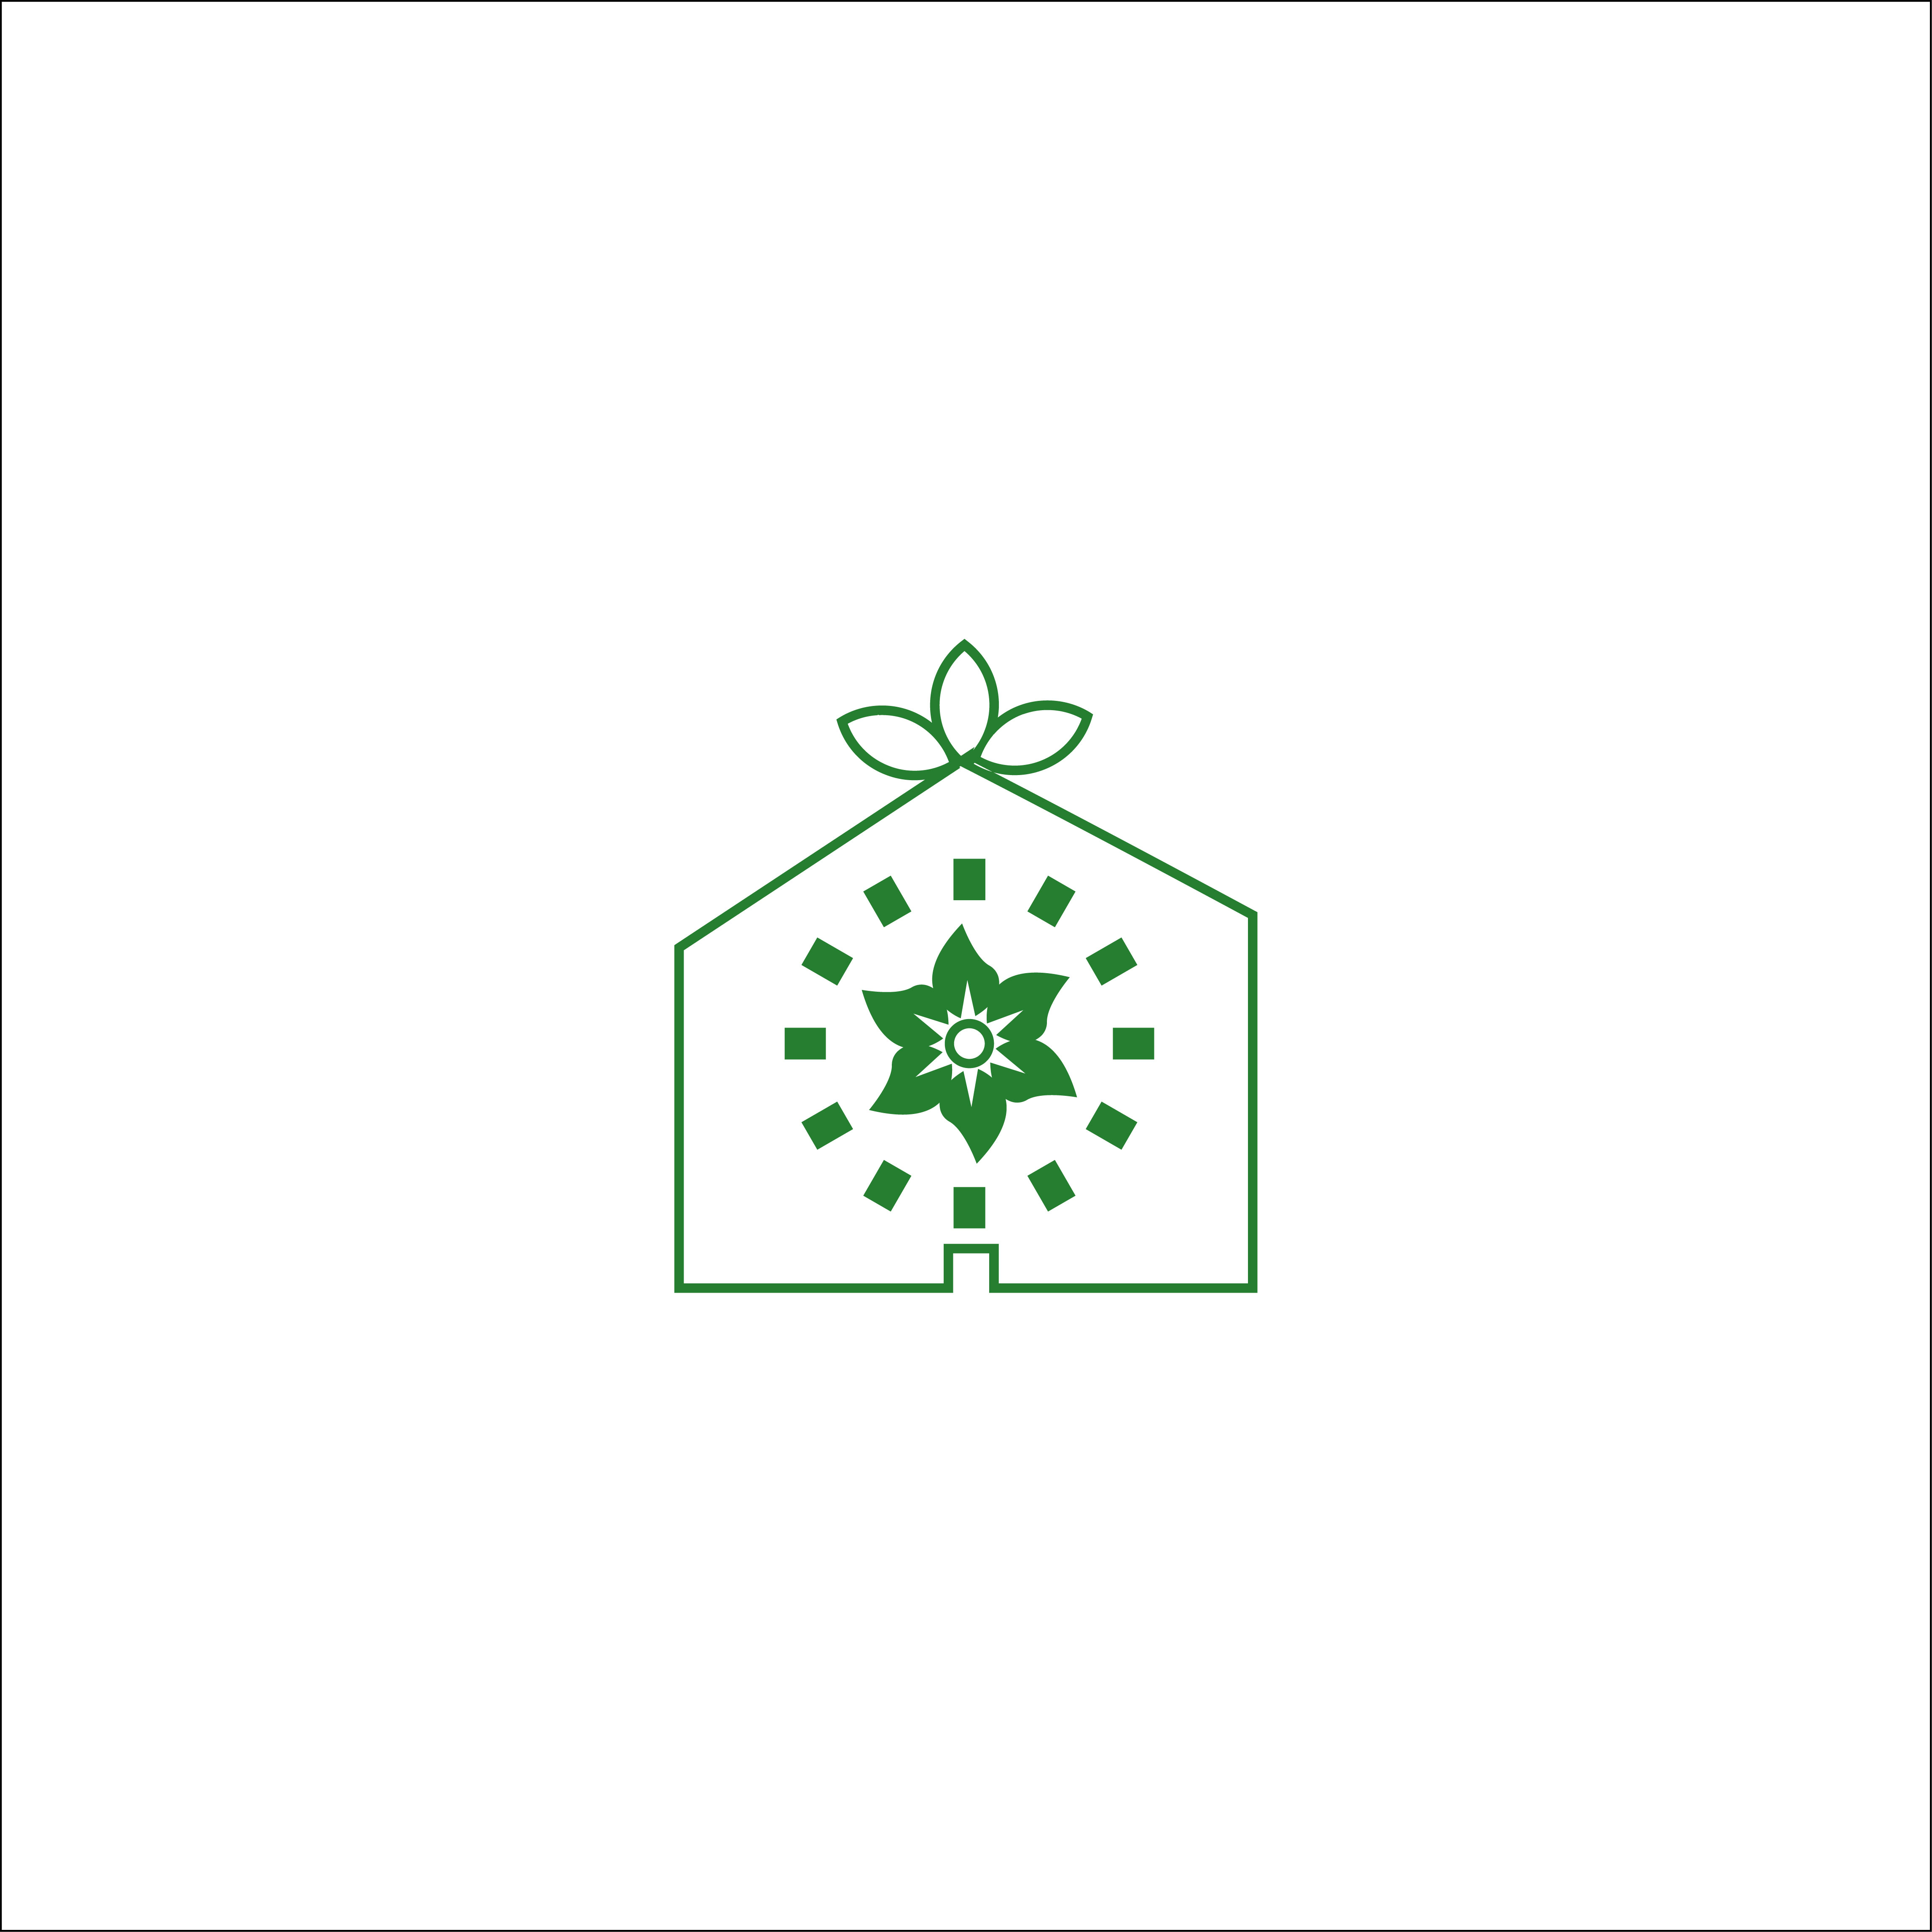 Tree home logo design cover image.